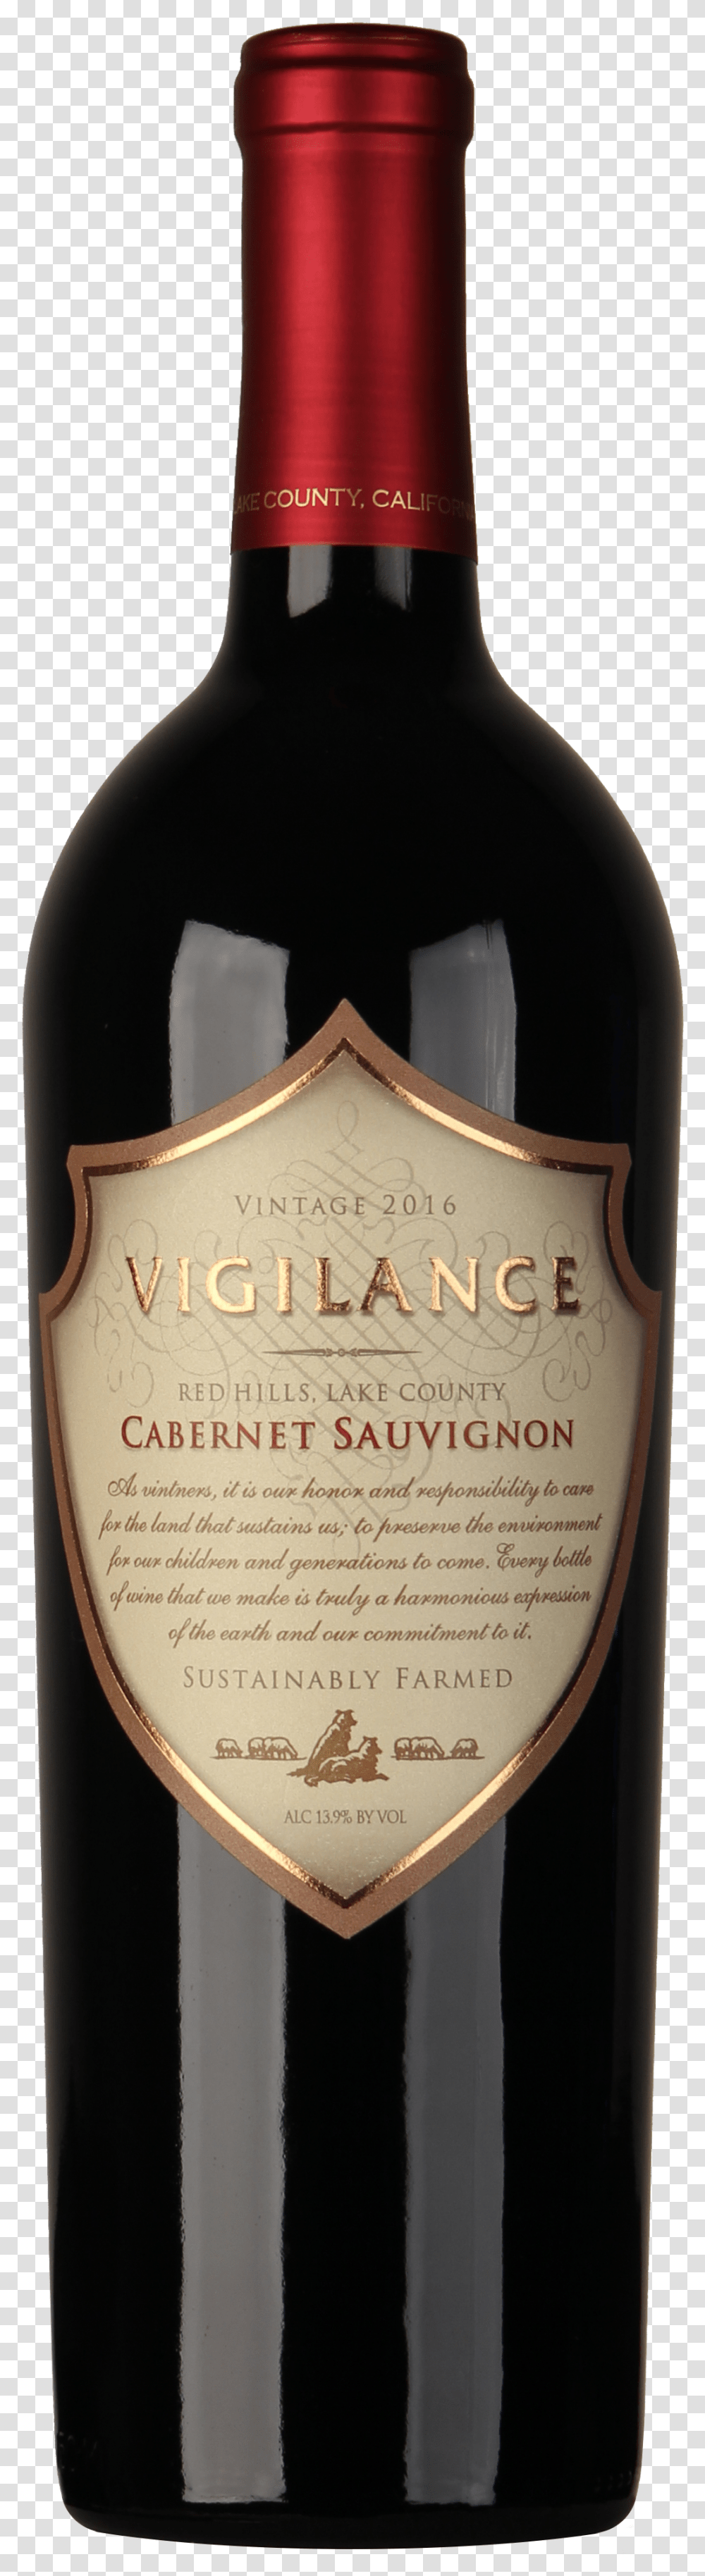 Vigilance Cabernet Sauvignon 2015, Bottle, Wine, Alcohol, Beverage Transparent Png